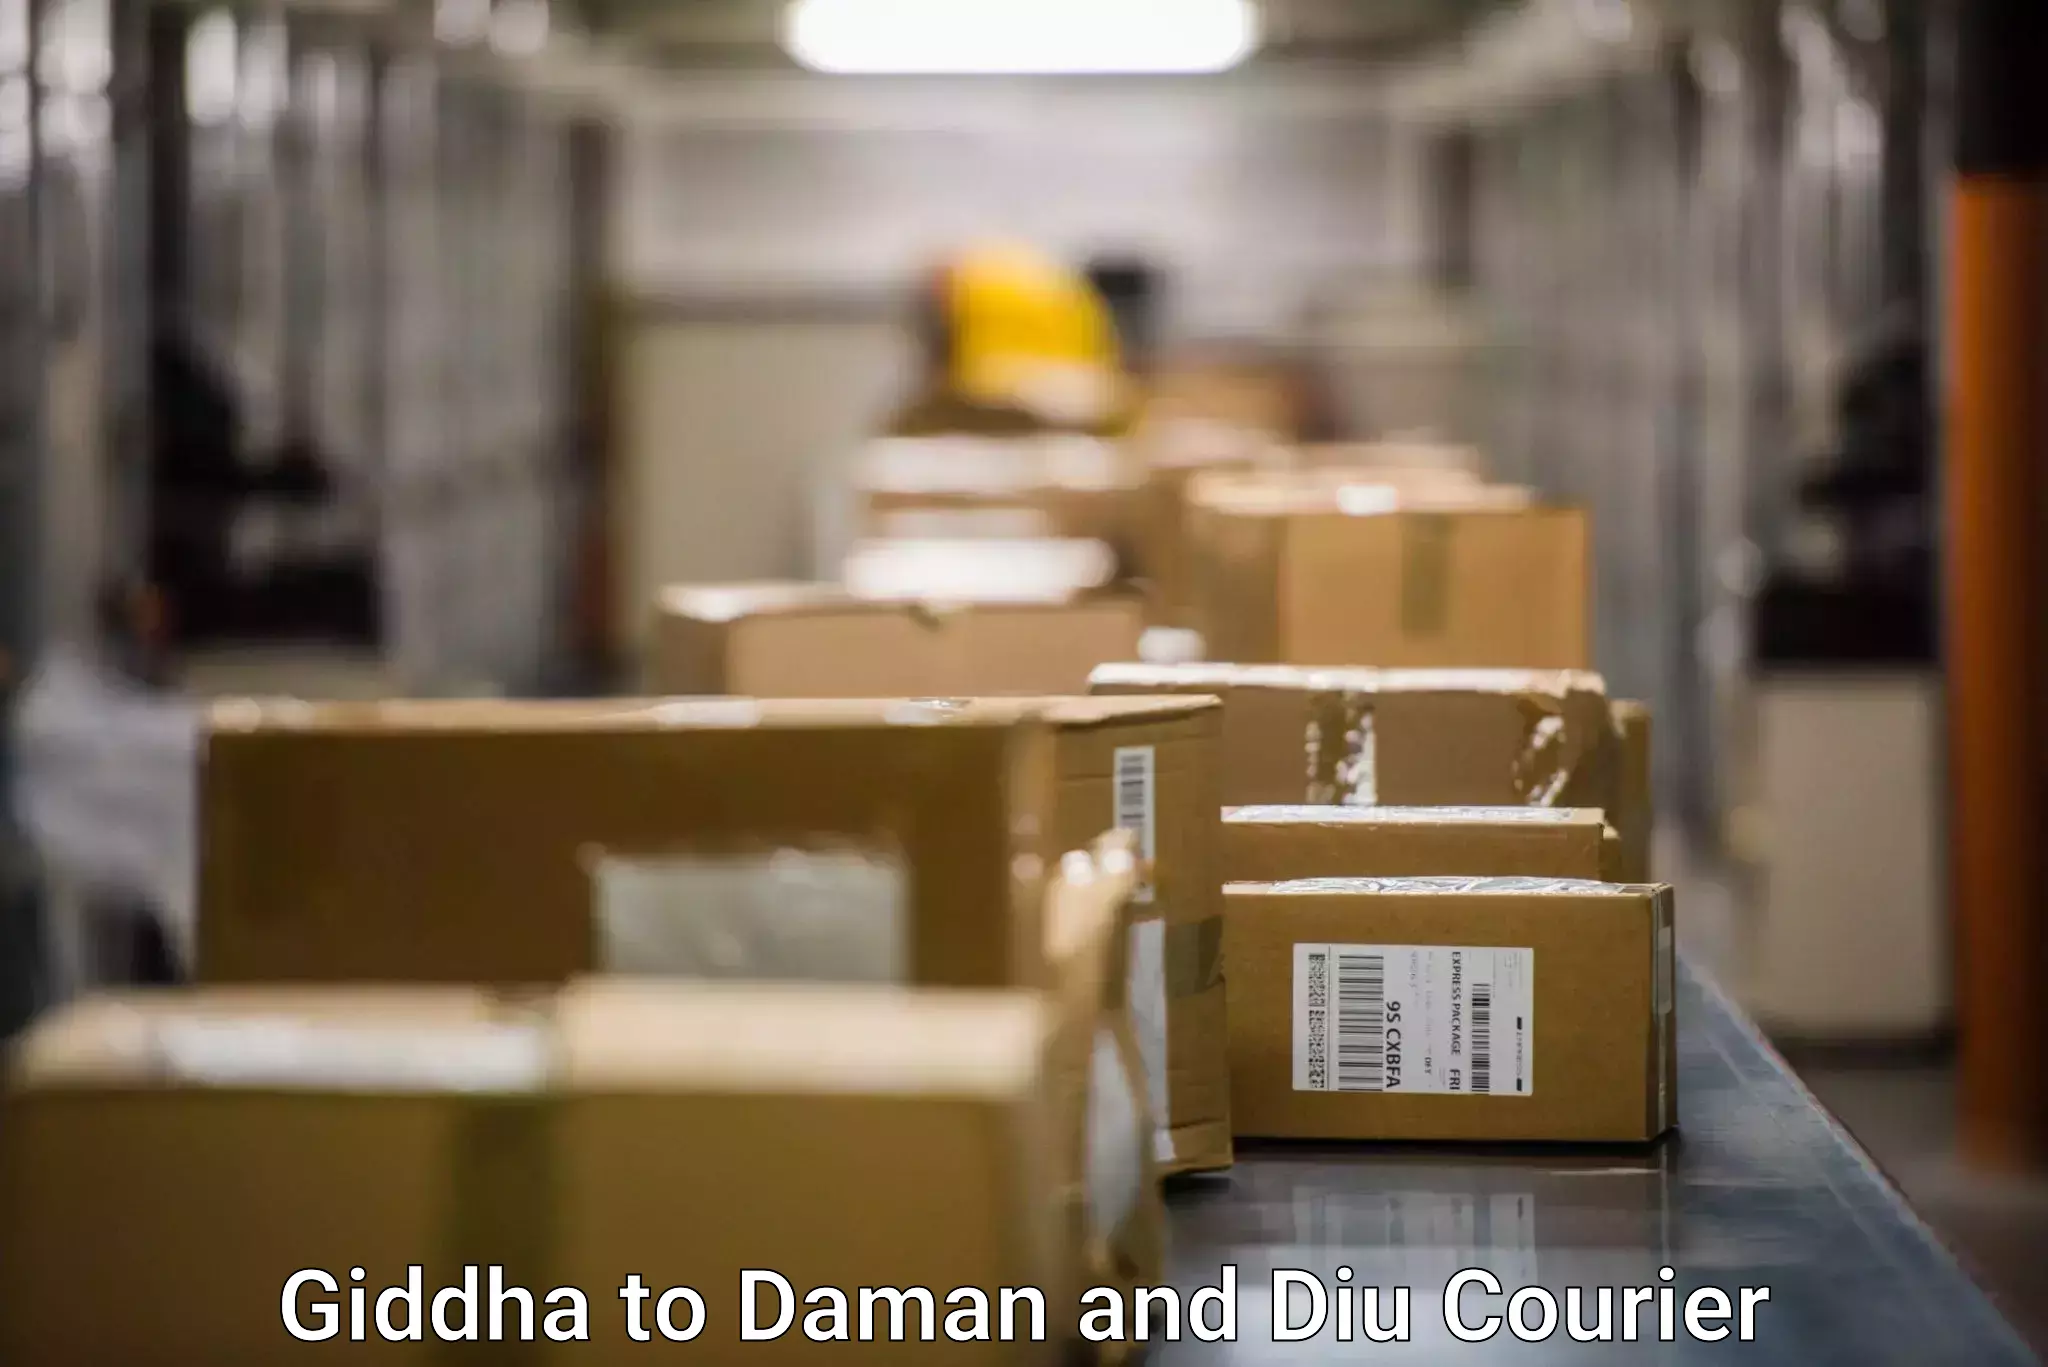 Comprehensive logistics Giddha to Daman